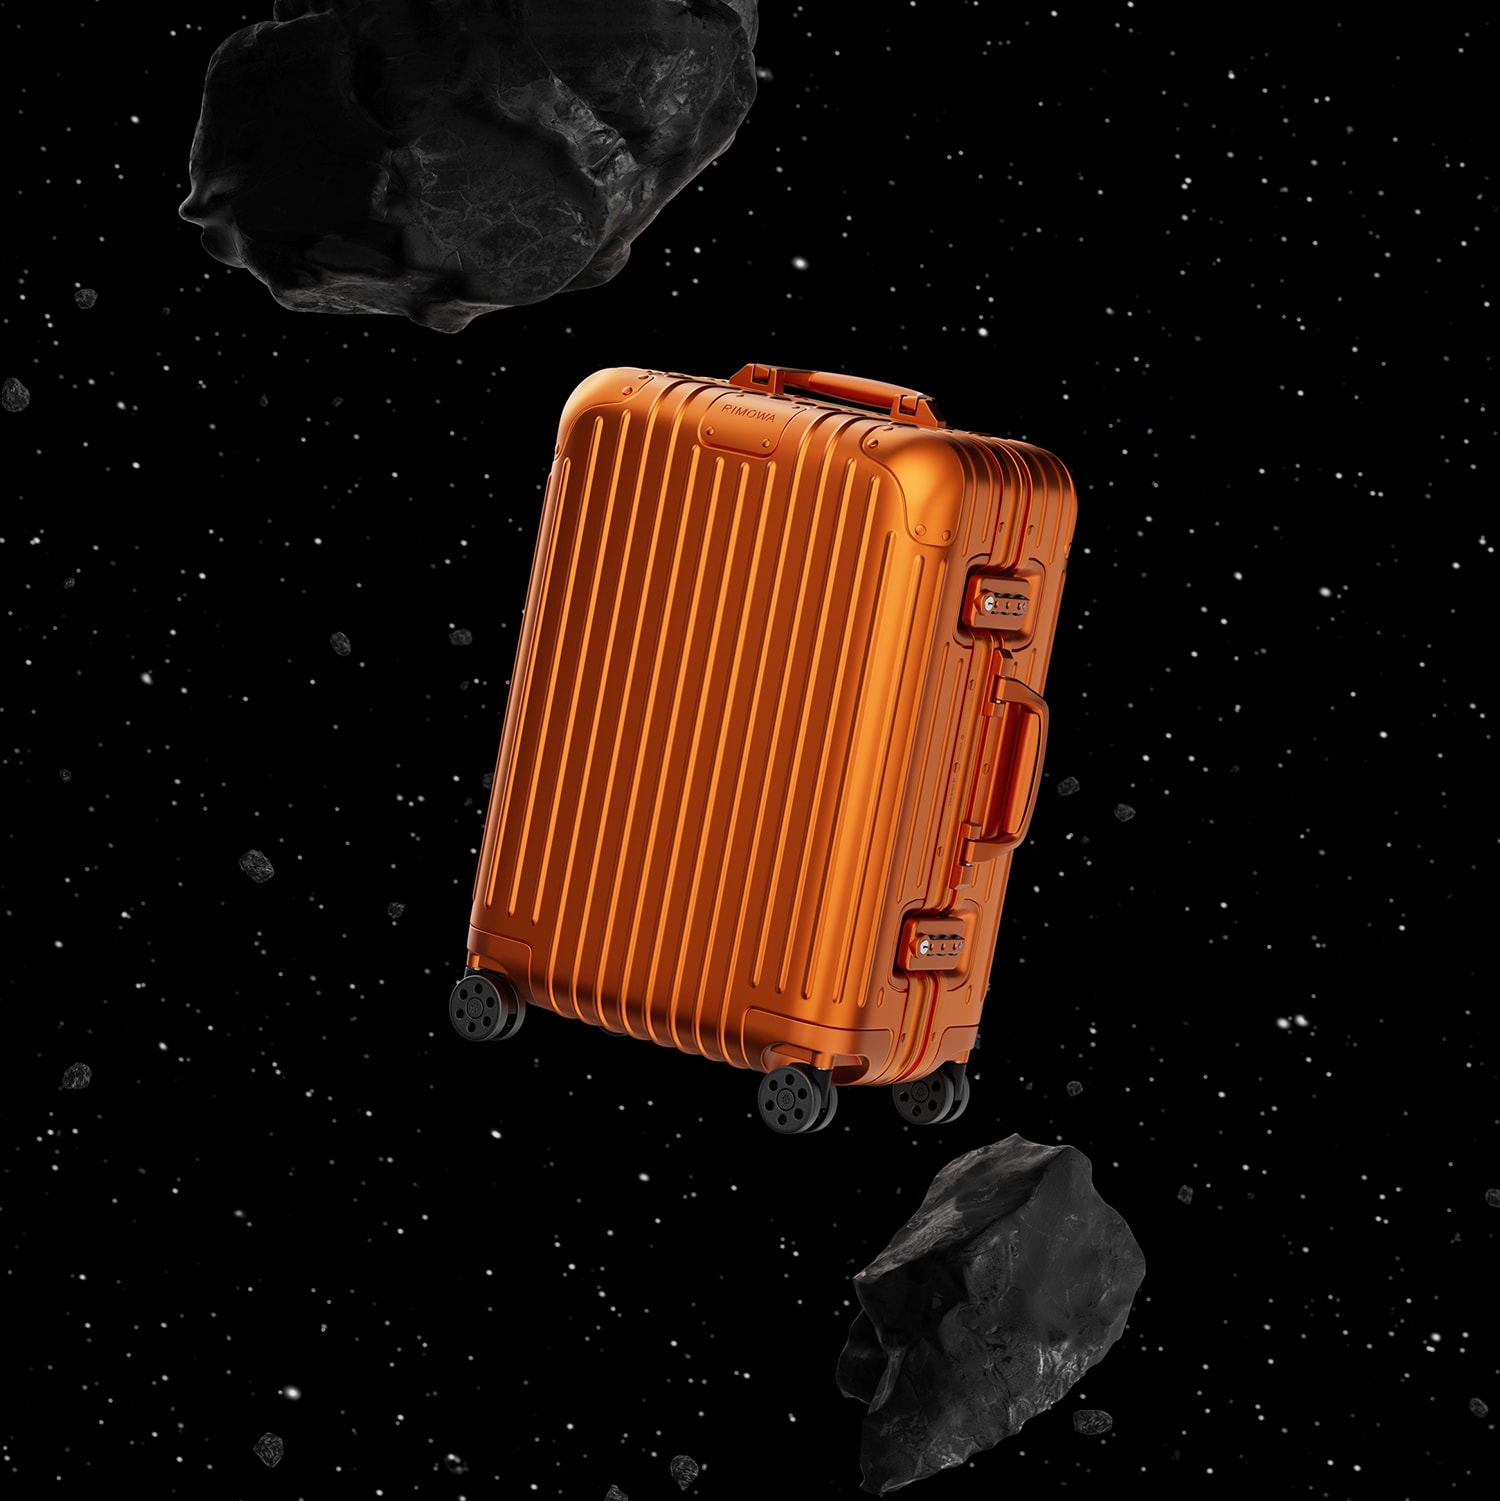 RIMOWA Original 鋁鎂合金行李箱推出「Mars」及「Mercury」兩種限定新色